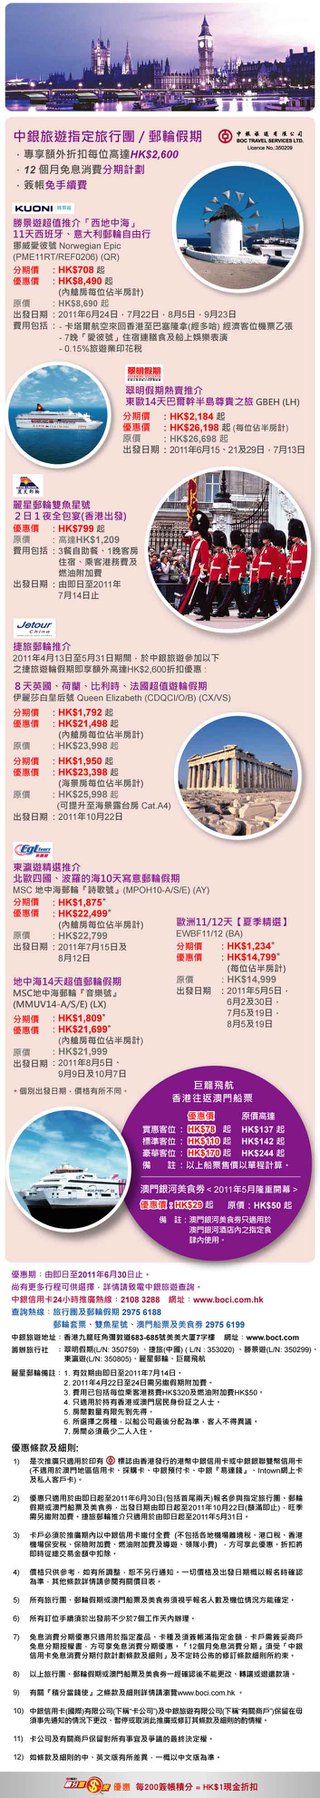 中銀旅遊指定旅行團 / 郵輪假期專享額外高達HK$2,600折扣優惠 